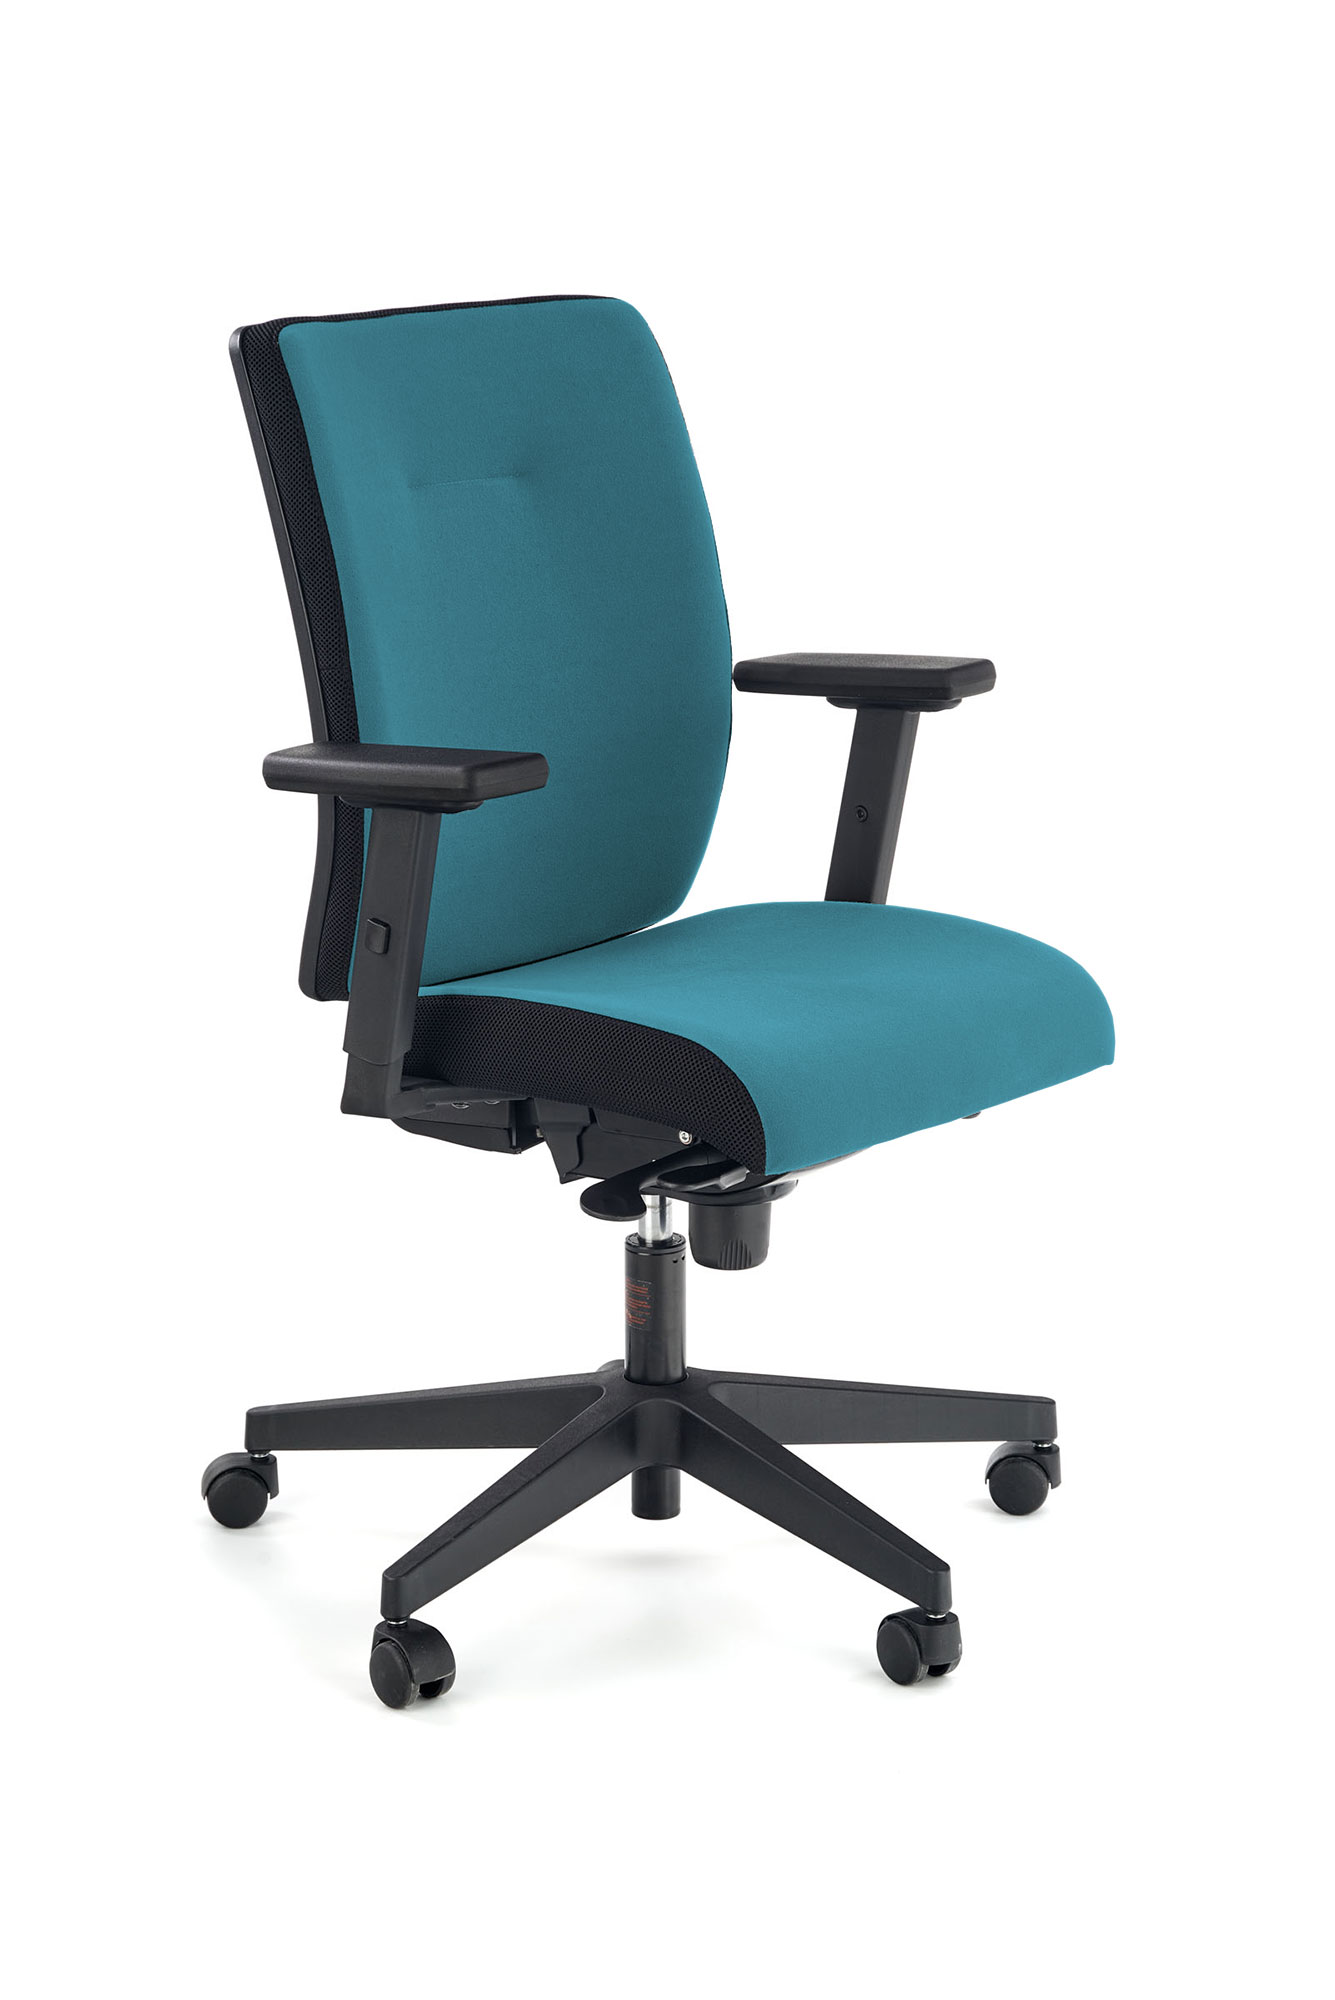 POP fotel pracowniczy, kolor: pasek boczny - czarny, front - niebieski